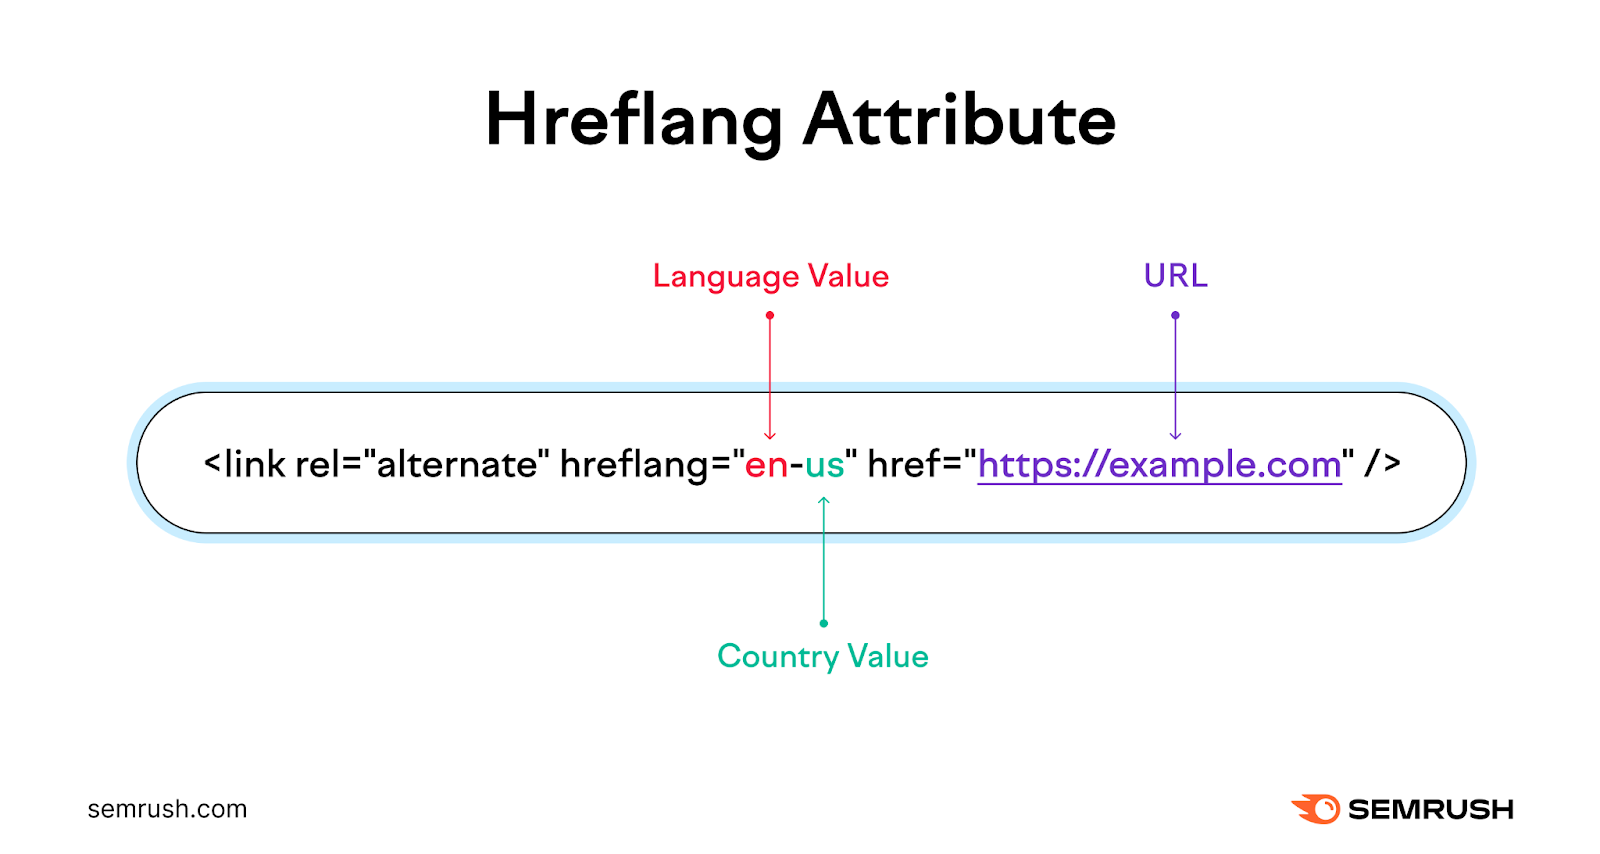 An hreflang attribute HTML tag.